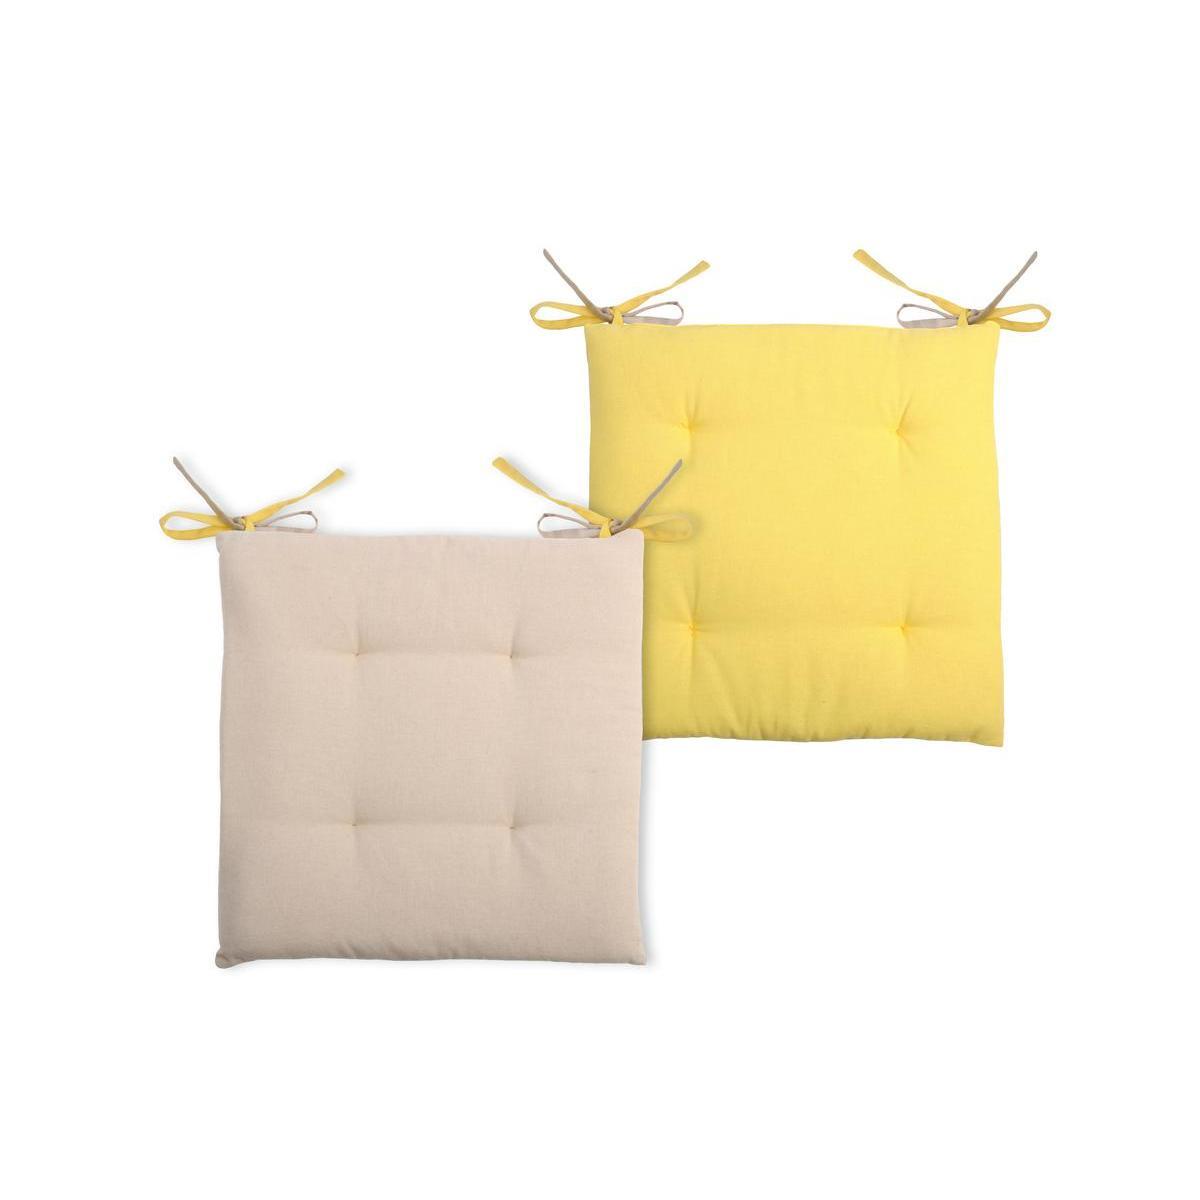 2 galettes de chaises 4 points - 100 % coton - 38 x 38 x 3,5 cm - Beige et jaune